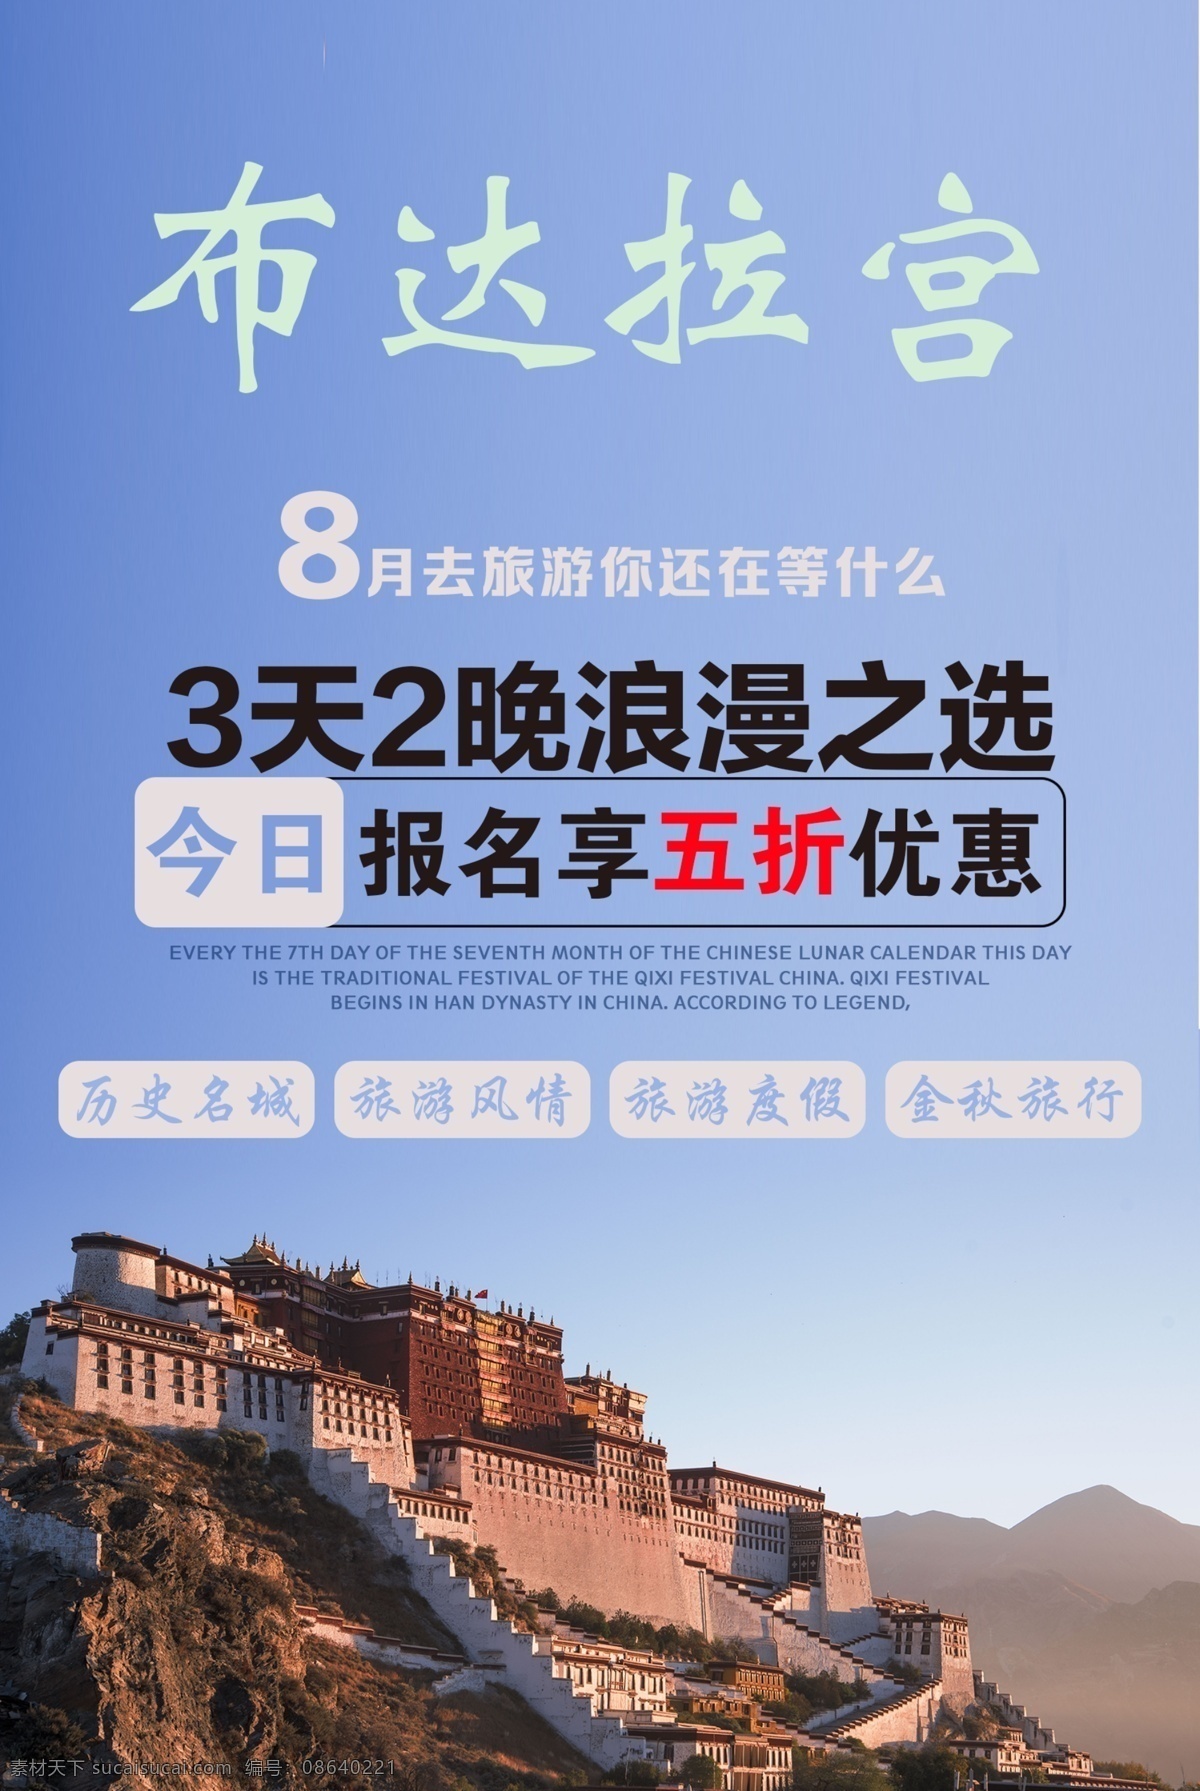 布达拉宫旅游 布达拉宫 旅游 旅游海报 布达拉宫海报 西藏海报 旅游海报设计 设计旅游